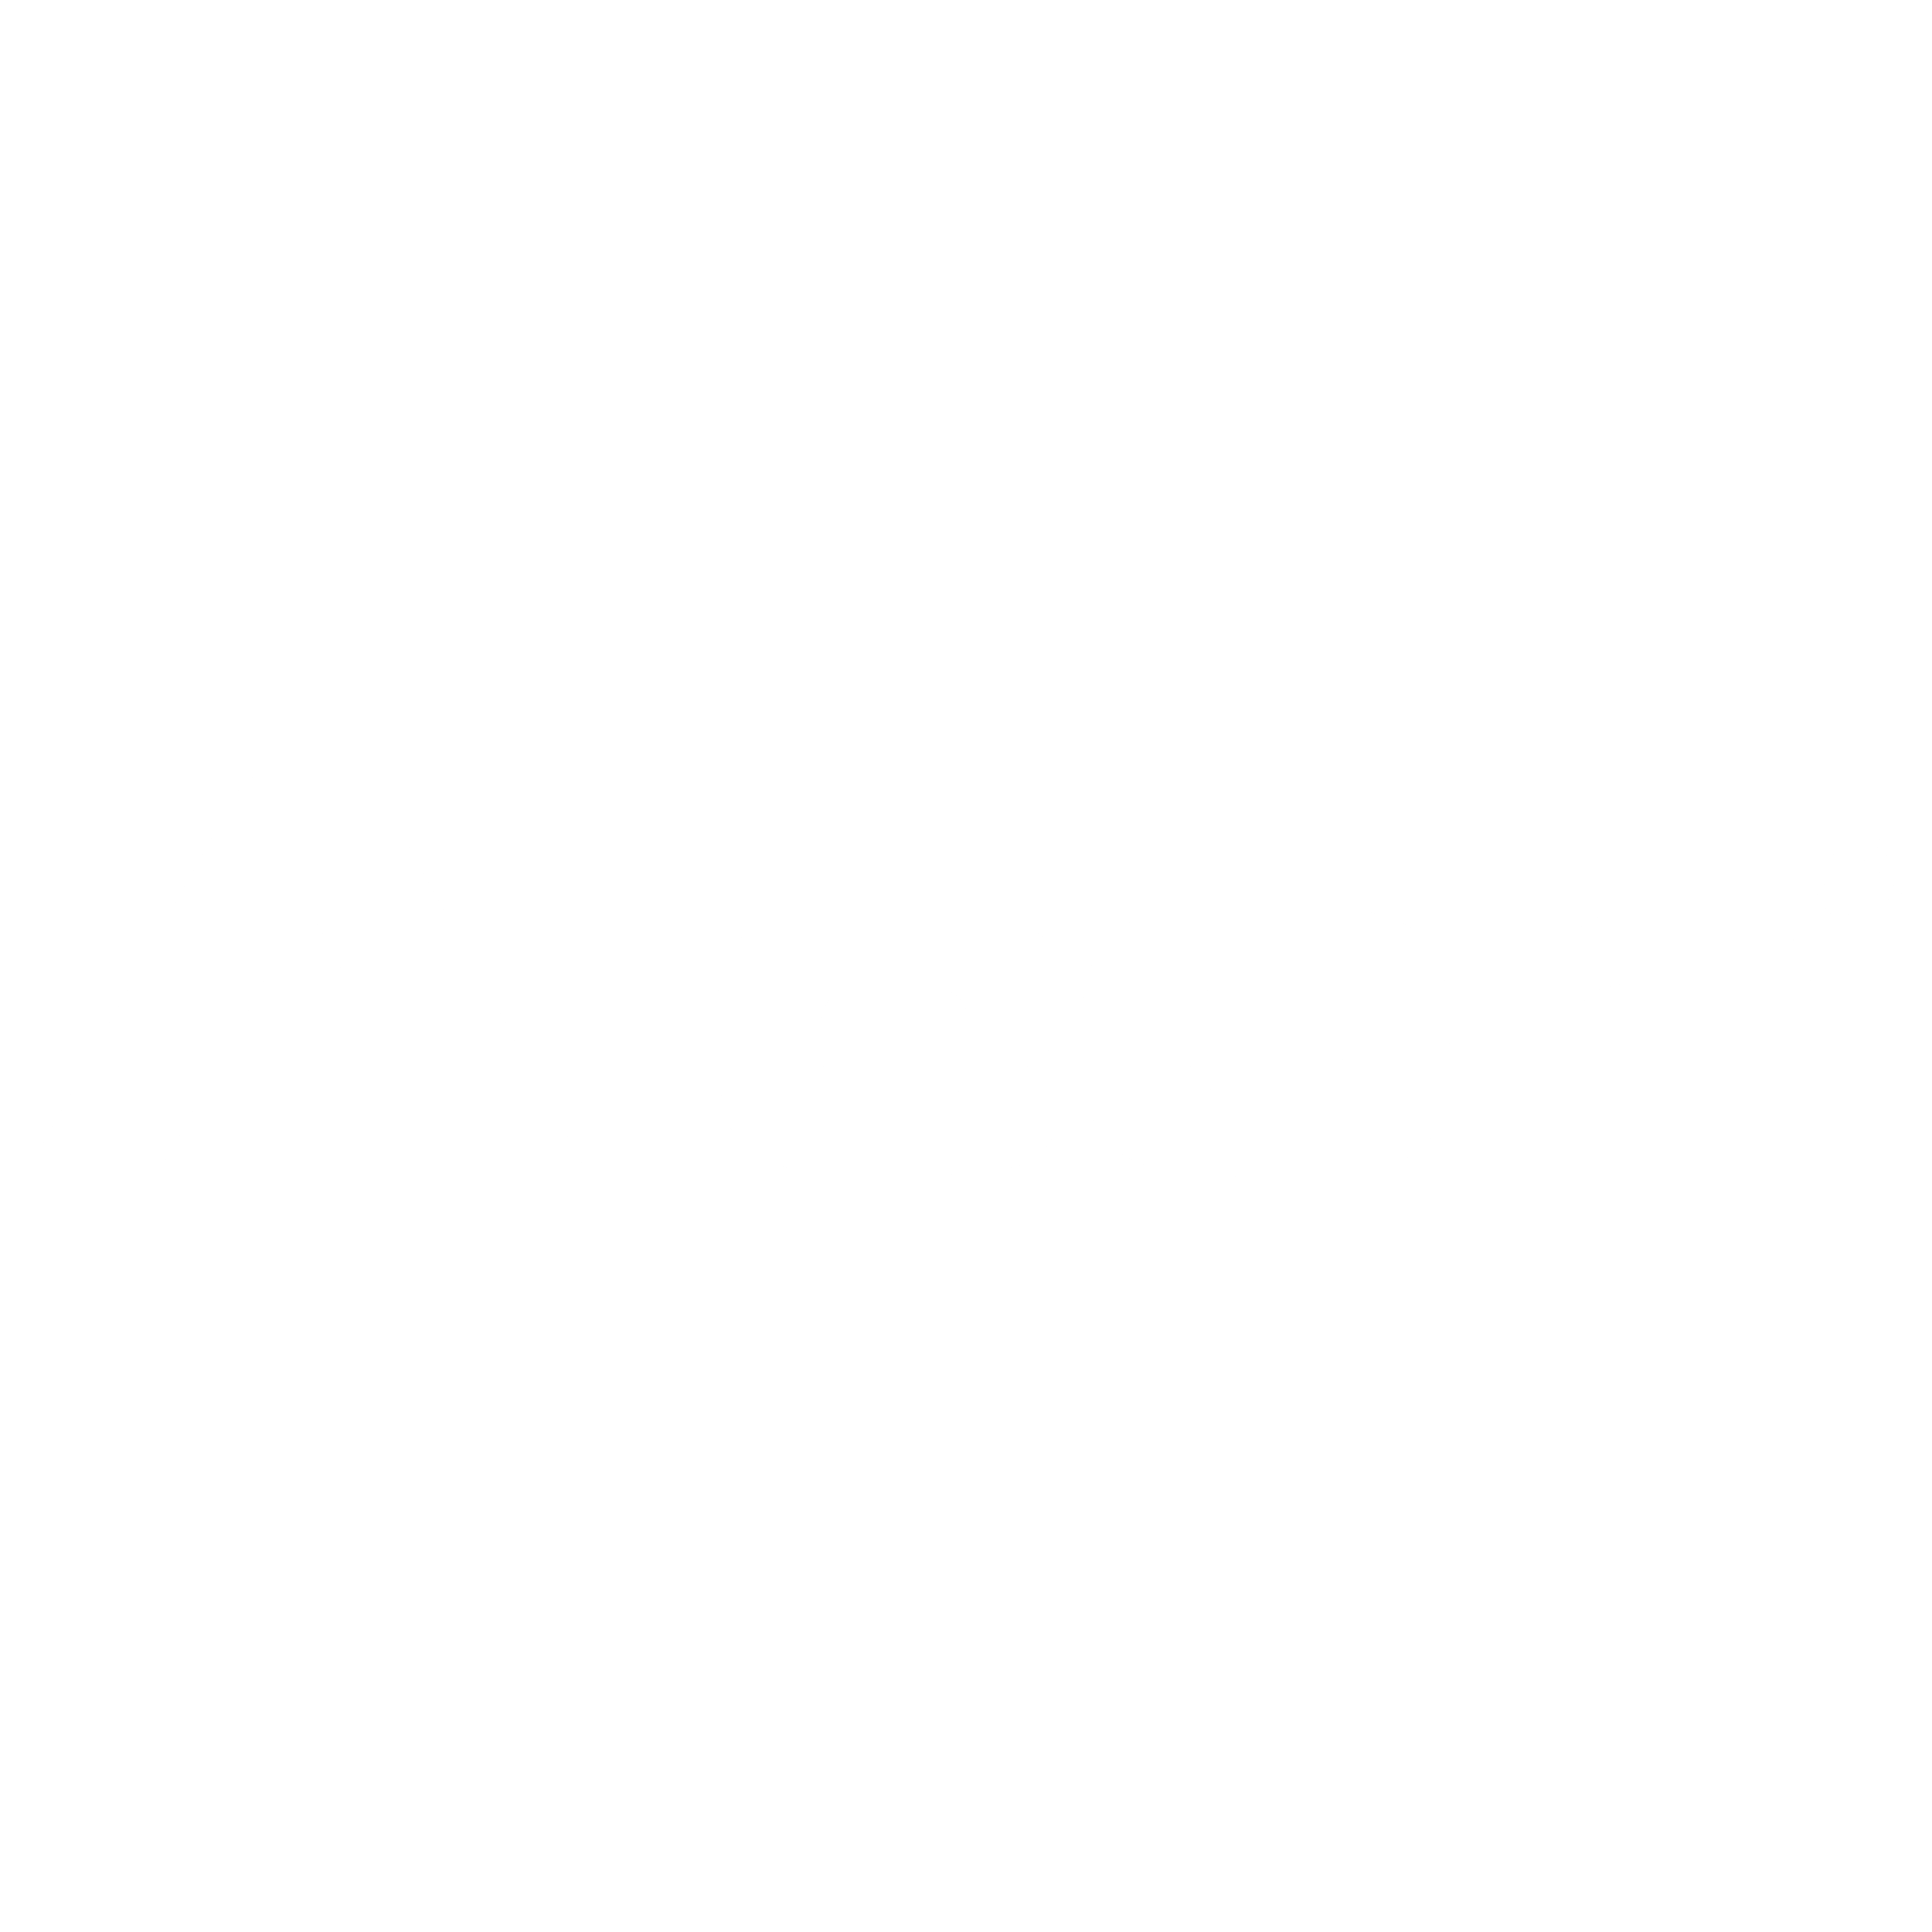 Alcon Logo - Alcon Logo PNG Transparent & SVG Vector - Freebie Supply